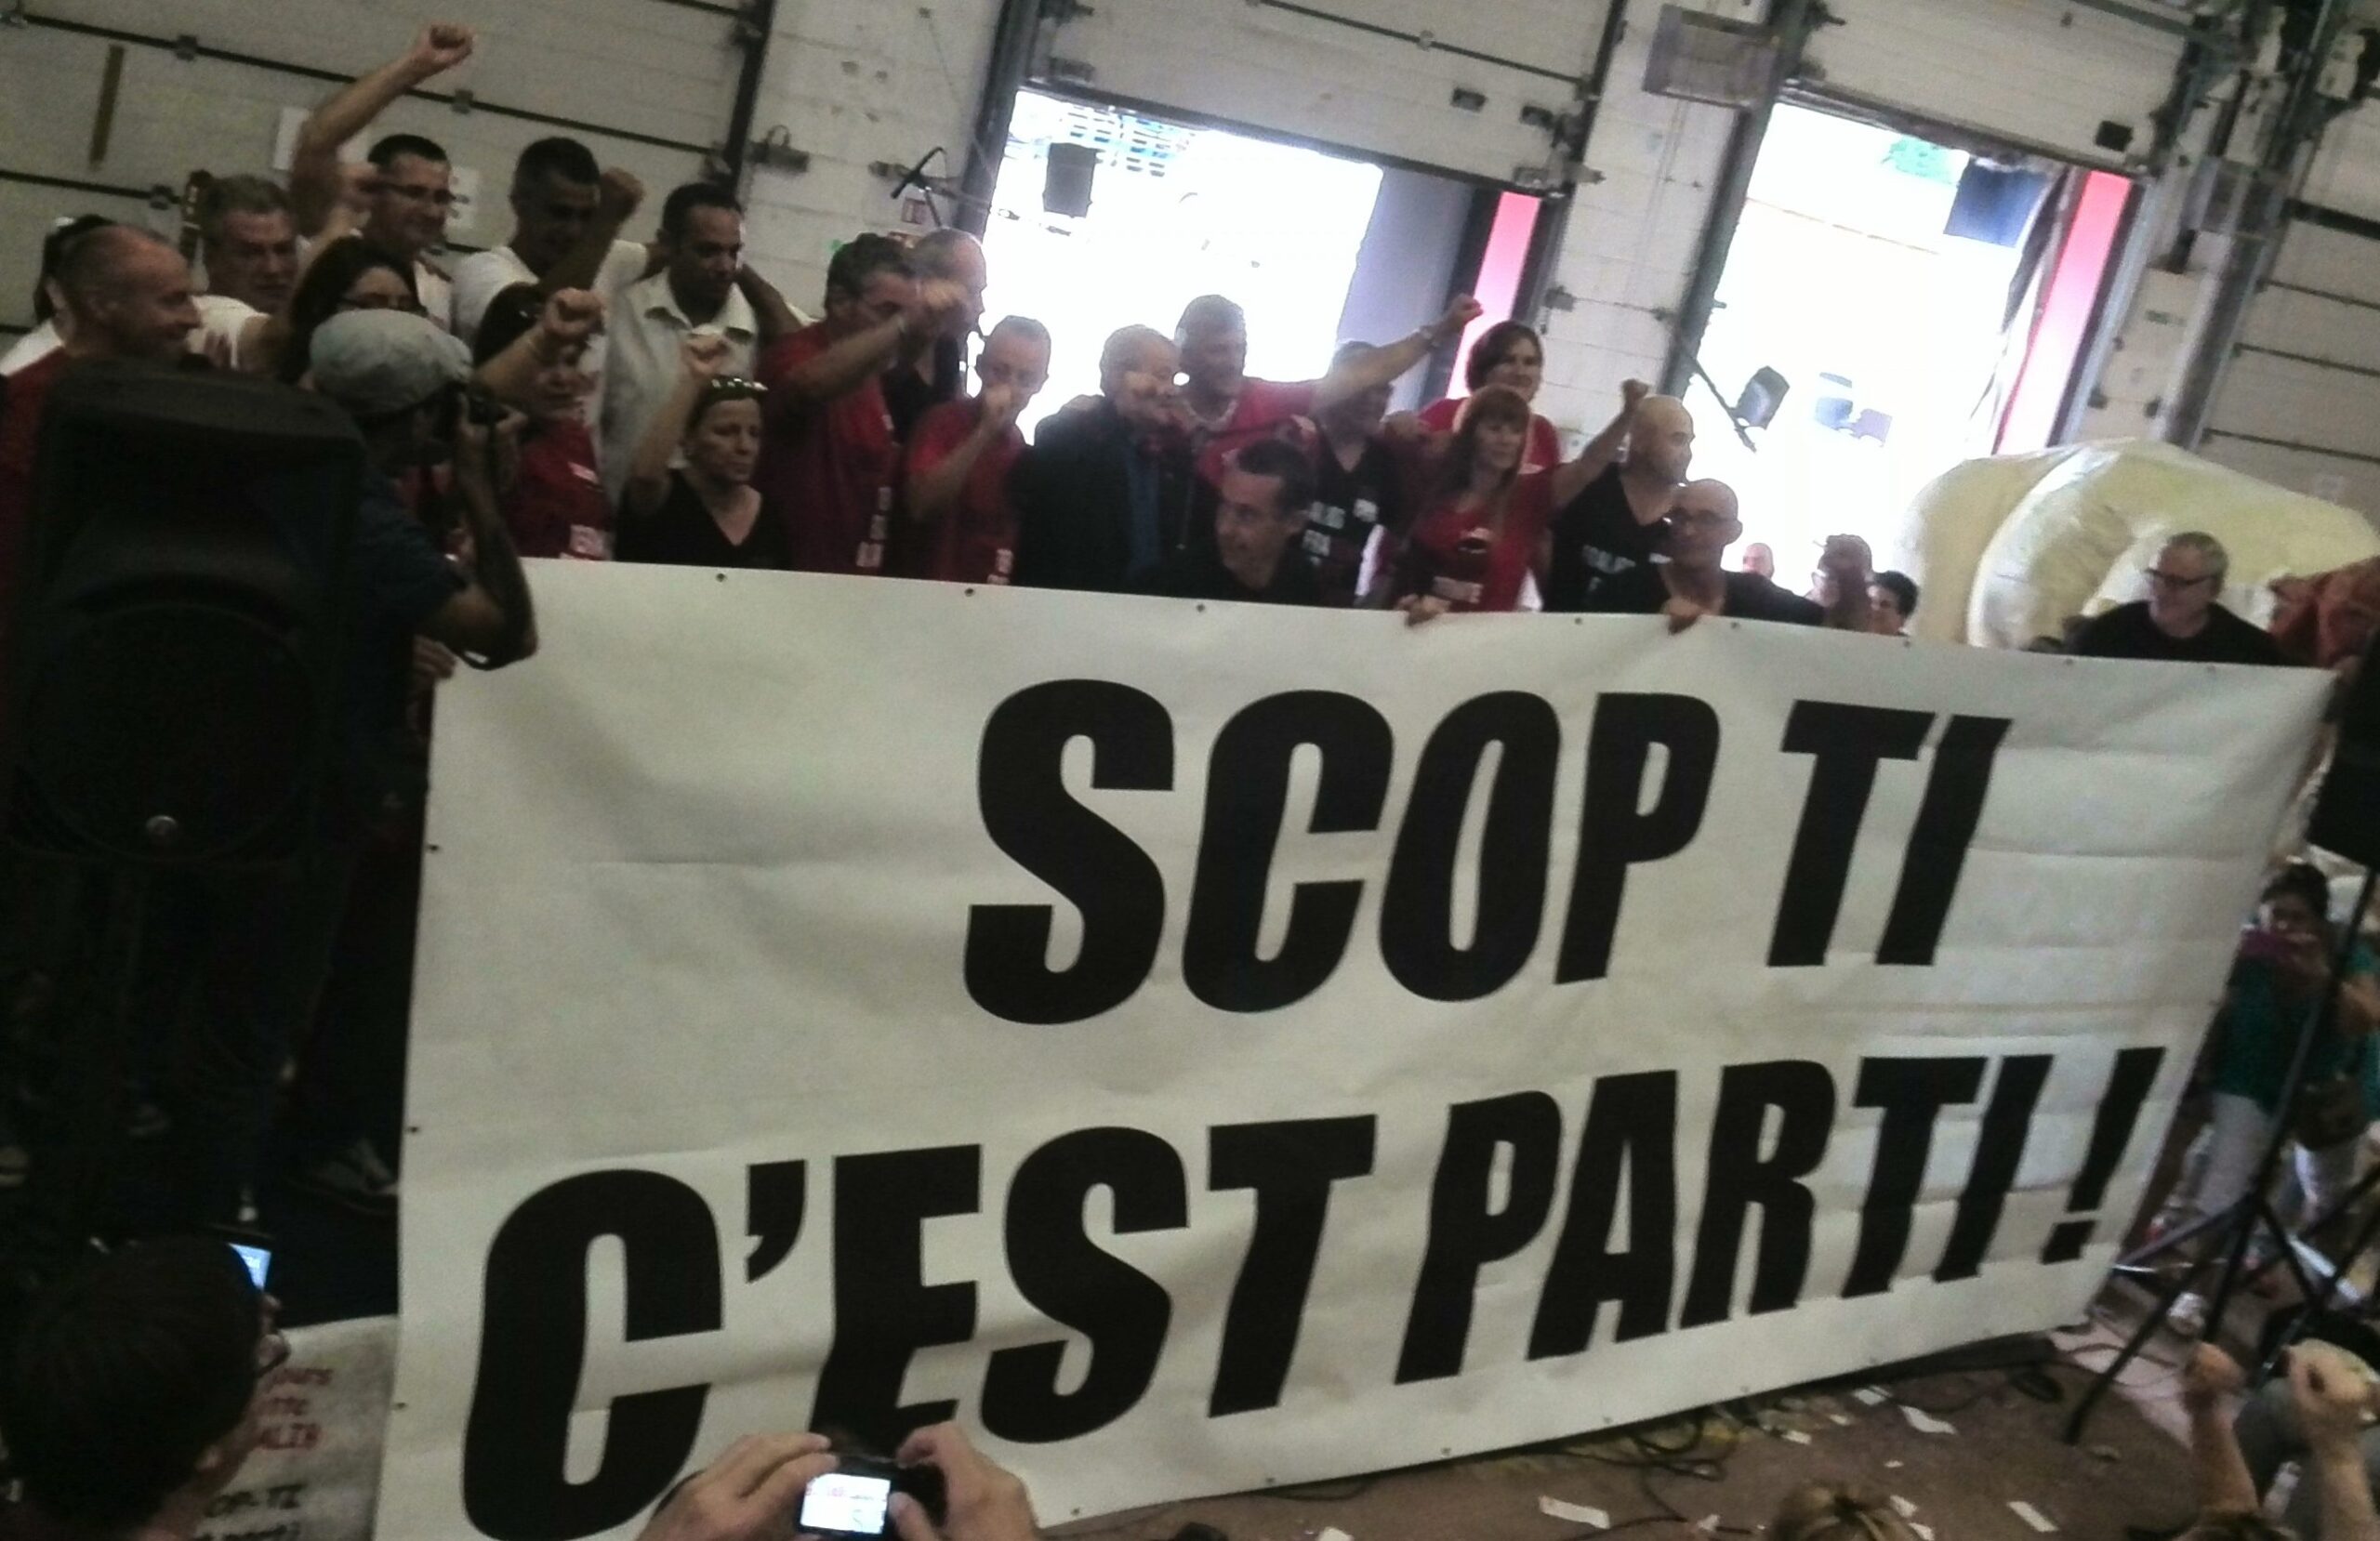 actie van medewerkers van vrij en democratisch theeproducent SCOP-TI